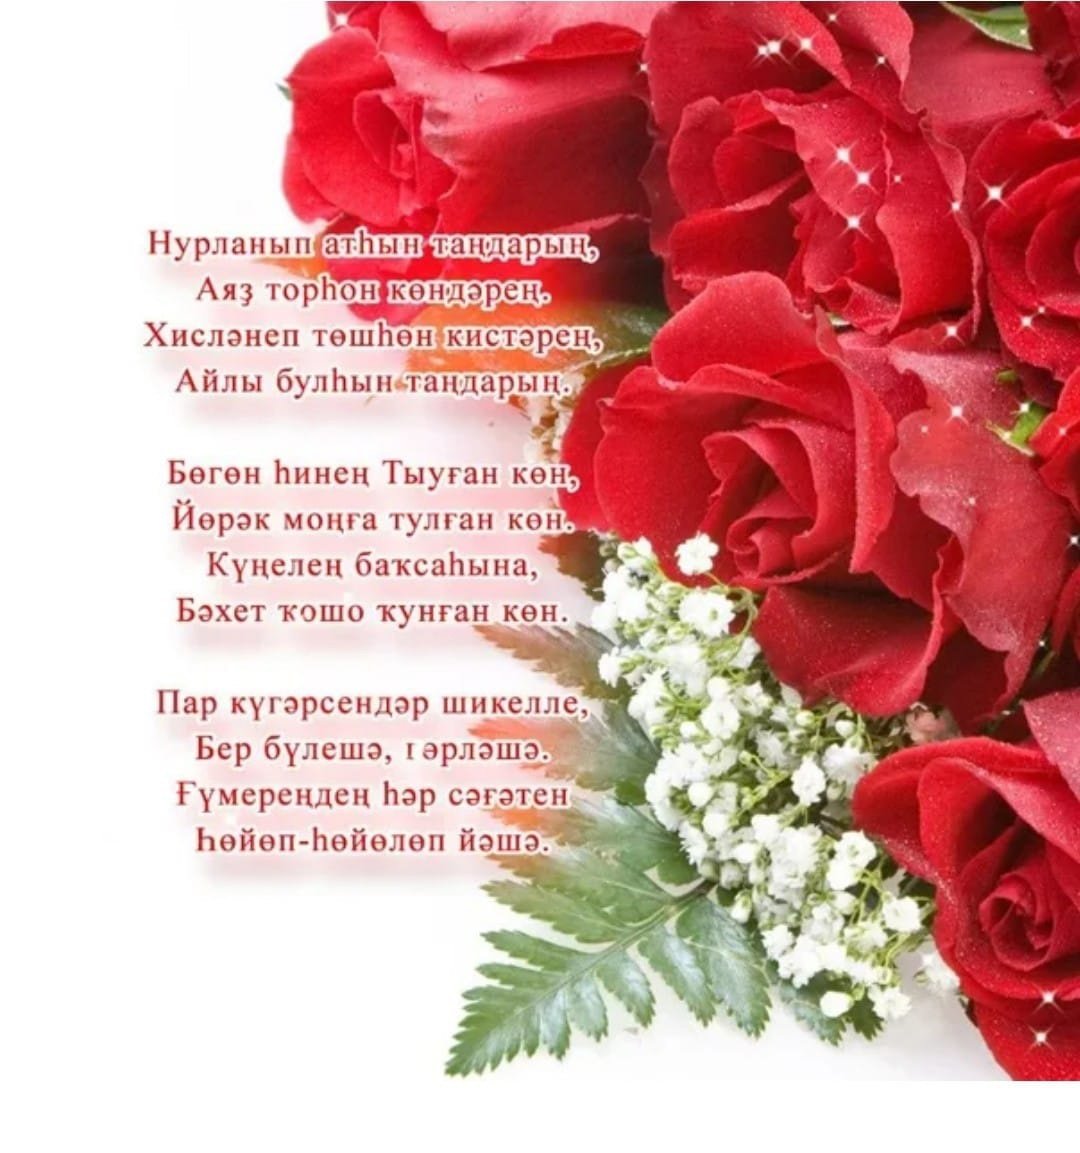 С днем рождения маме на башкирском. Поздравление с юбилеем на башкирском языке. Открытки с юбилеем женщине на башкирском языке. Башкирские поздравления с днем рождения женщине. Поздравляю с днём рождения на башкирском языке.